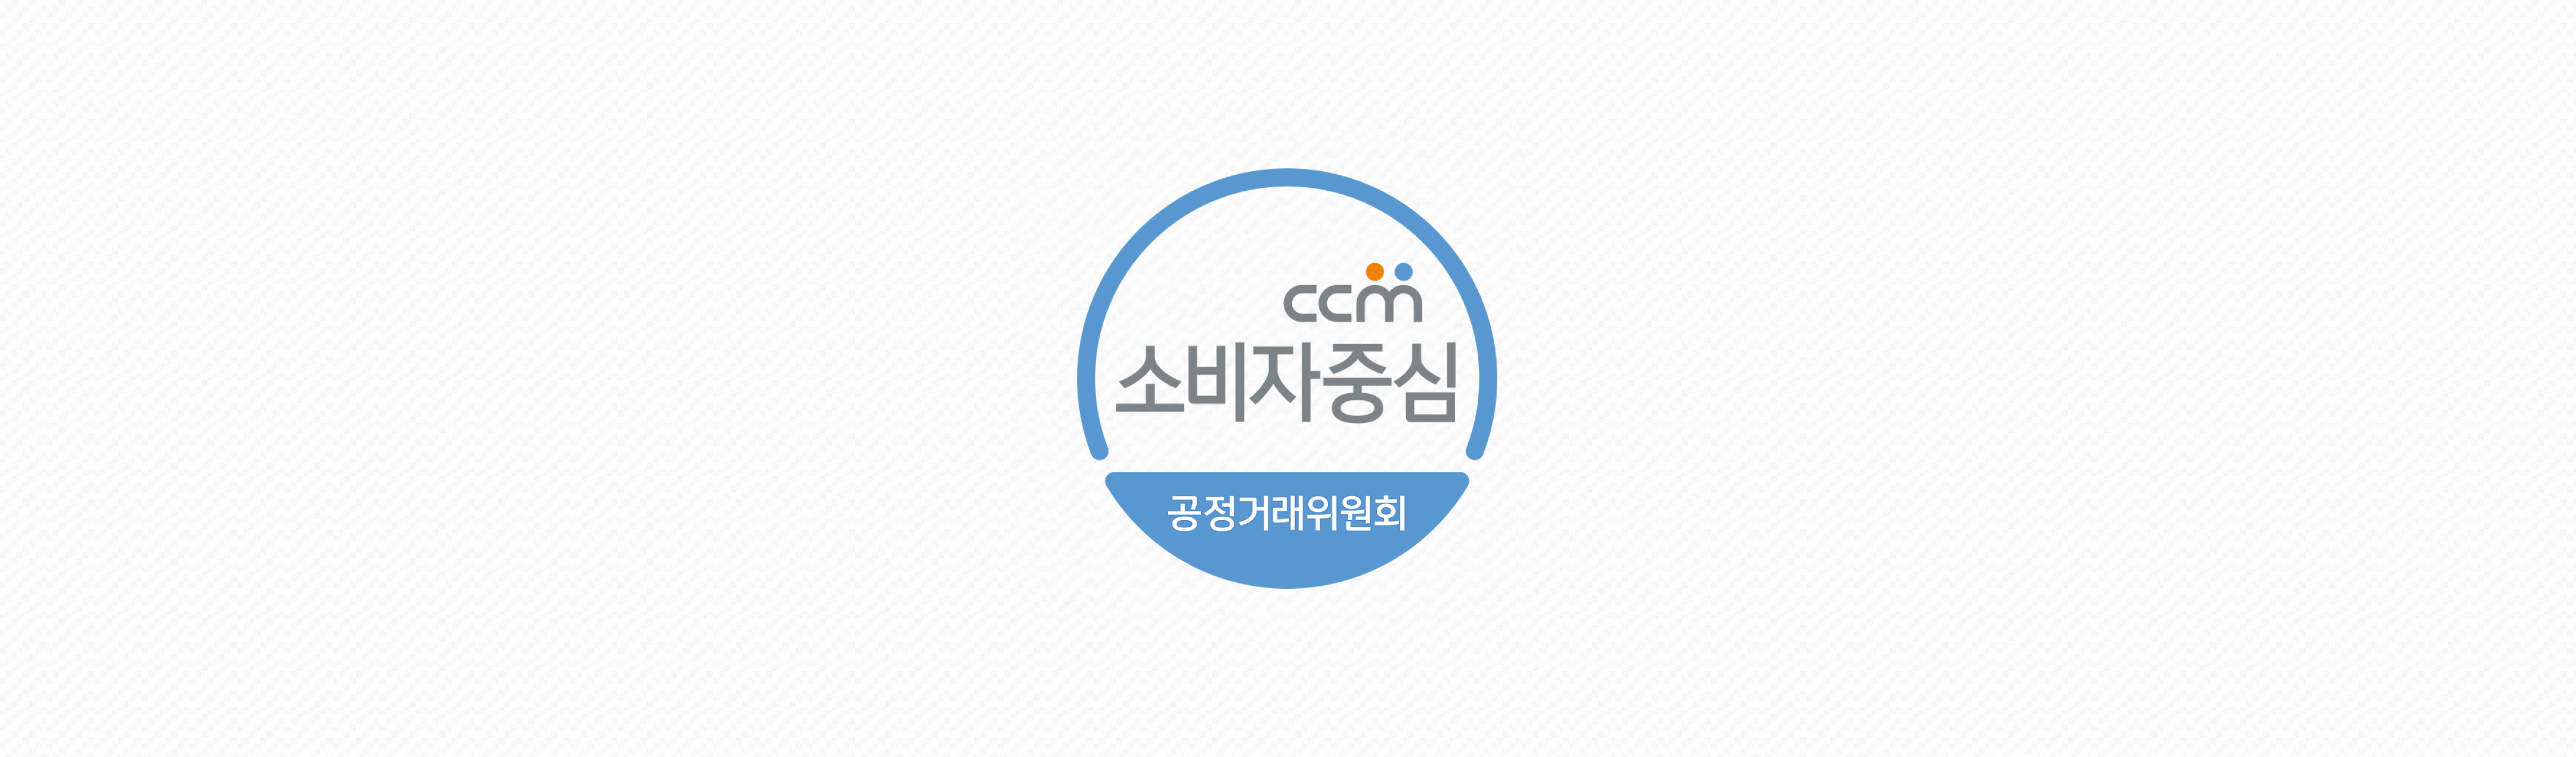 ccm 소비자중심 공정거래위원회